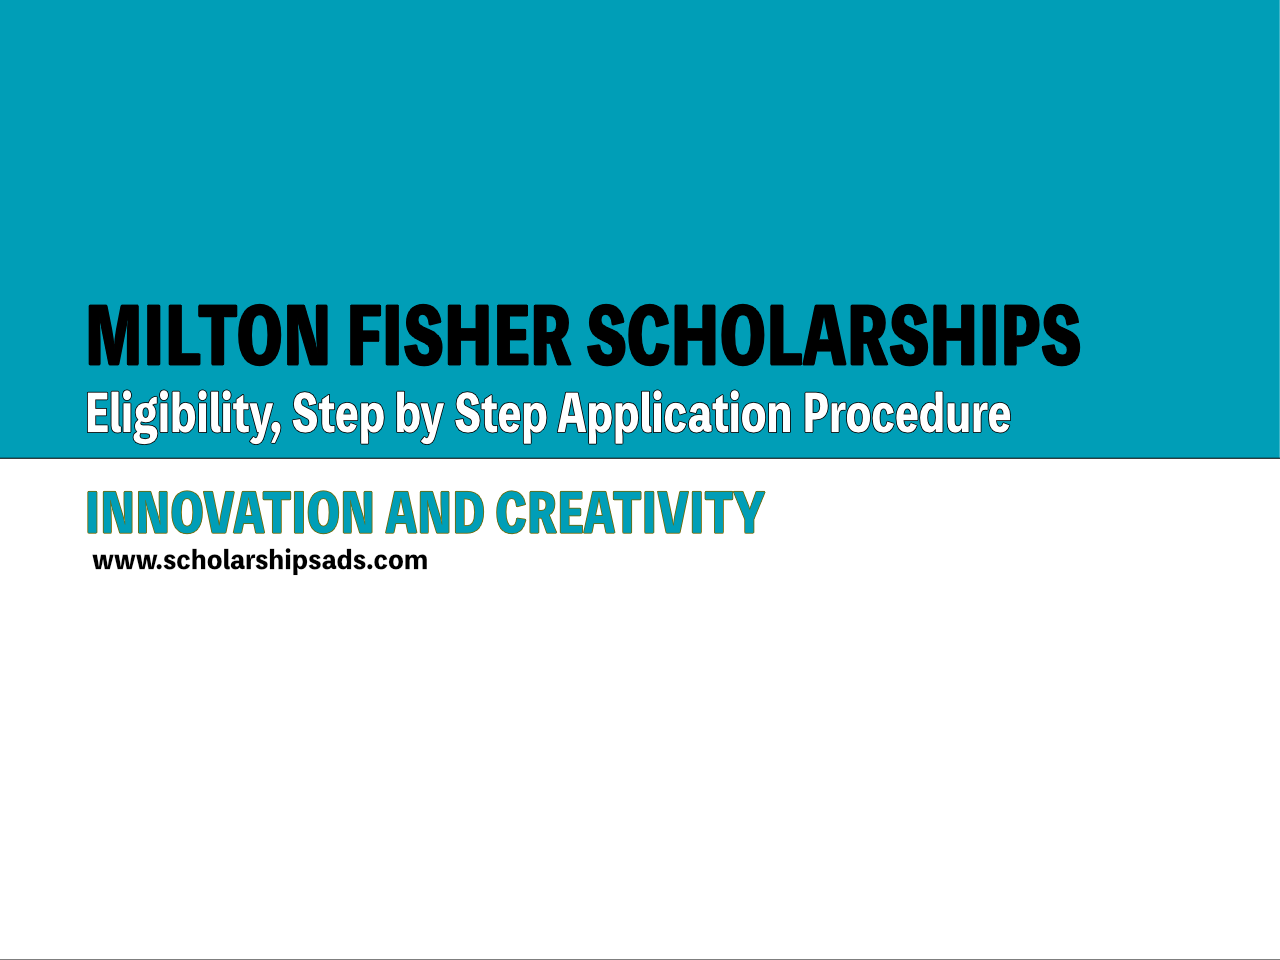 The Milton Fisher Scholarship USA